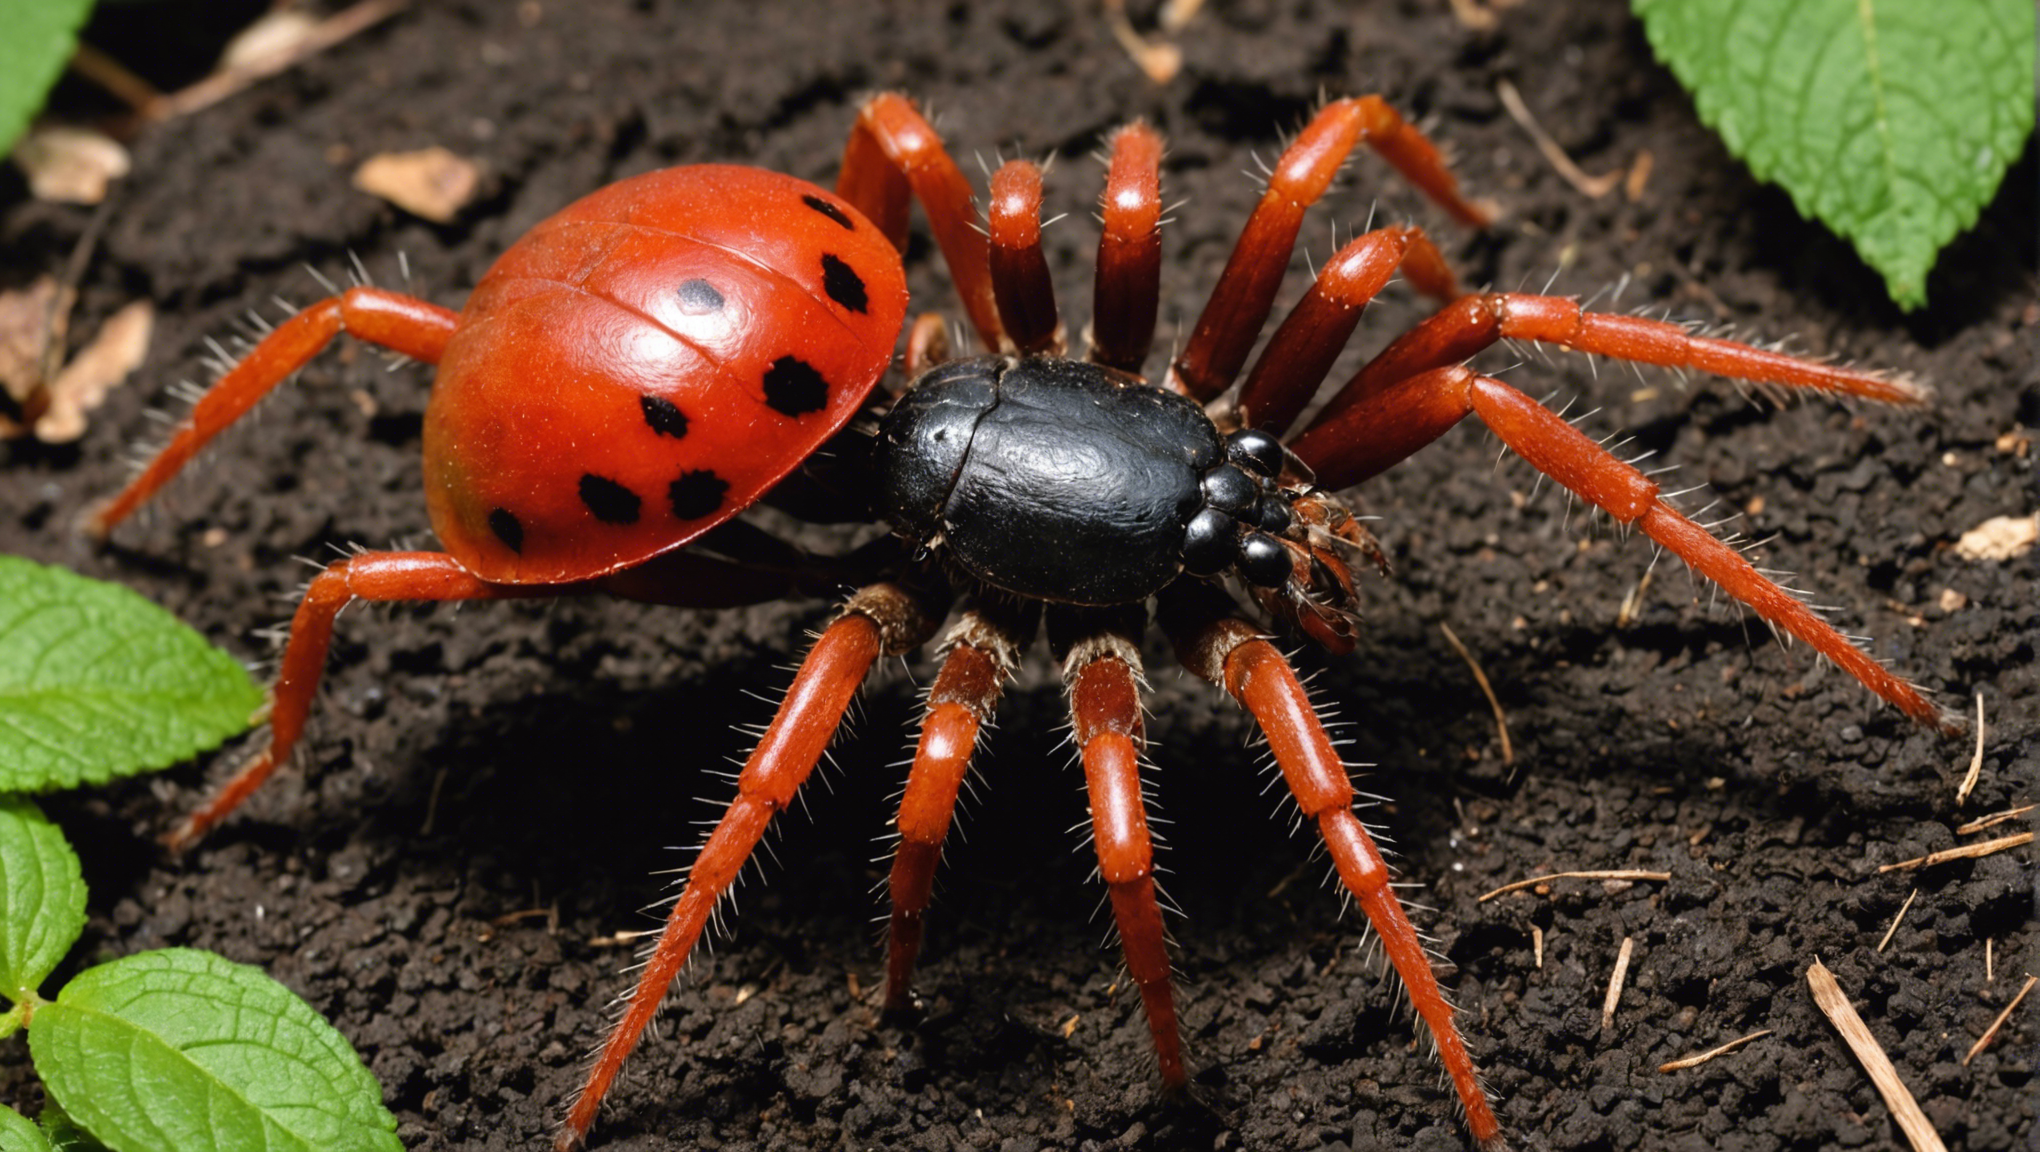 découvrez des astuces efficaces pour éliminer les araignées rouges dans votre jardin et retrouver un espace extérieur sain et agréable. conseils pratiques et naturels pour lutter contre ces nuisibles.